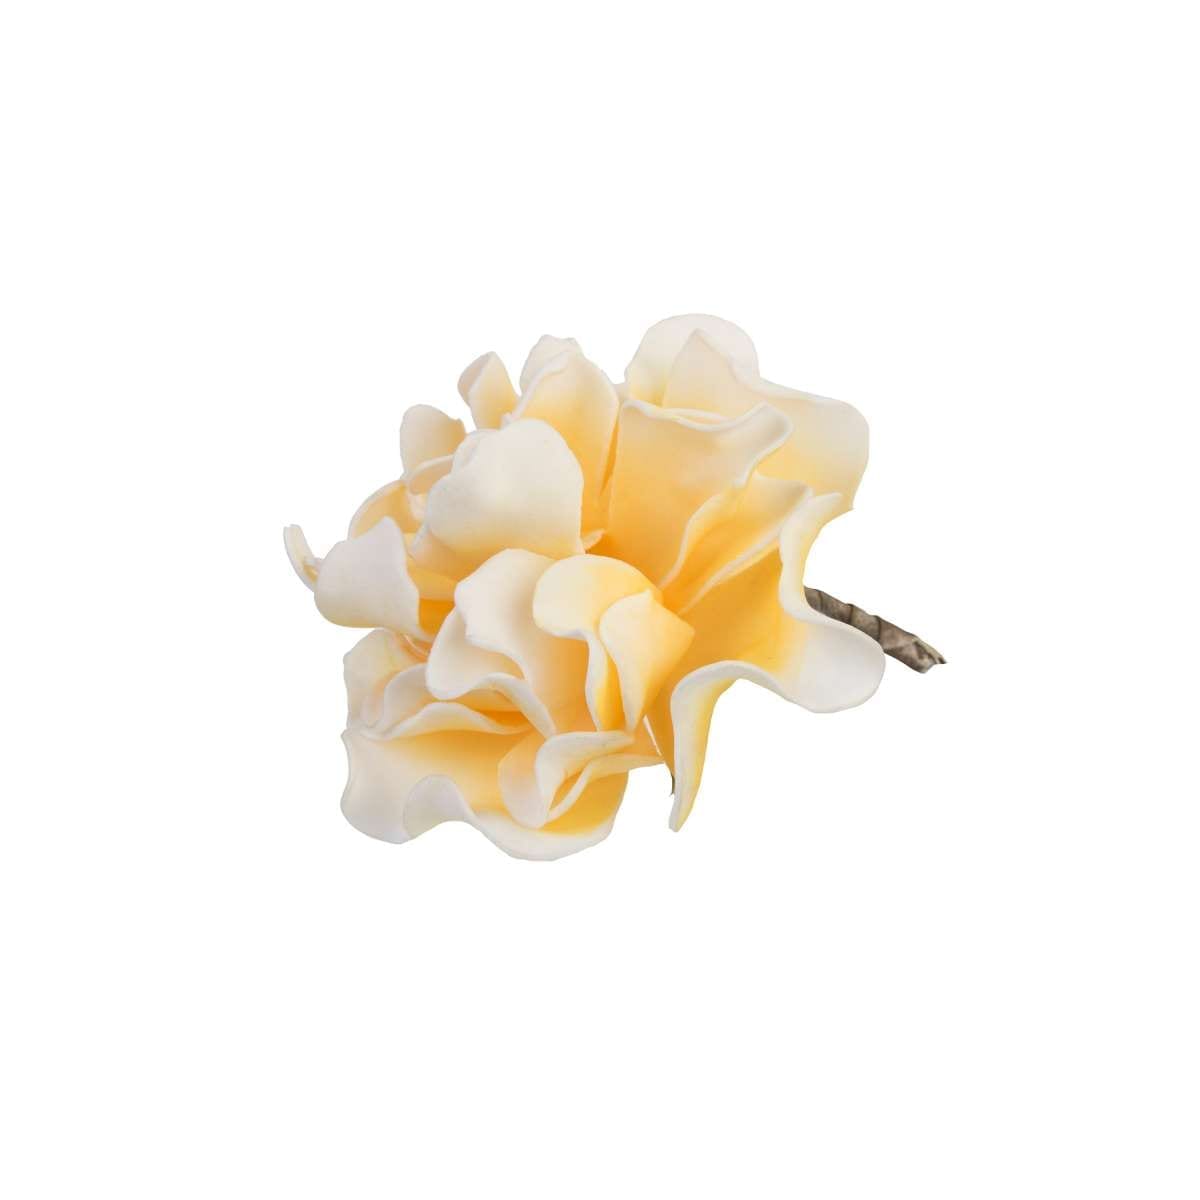 Λουλούδι Κίτρινο Art Et Lumiere 18εκ. 05672 (Σετ 6 Τεμάχια) (Χρώμα: Κίτρινο ) - Art Et Lumiere - lumiere_05672 138078